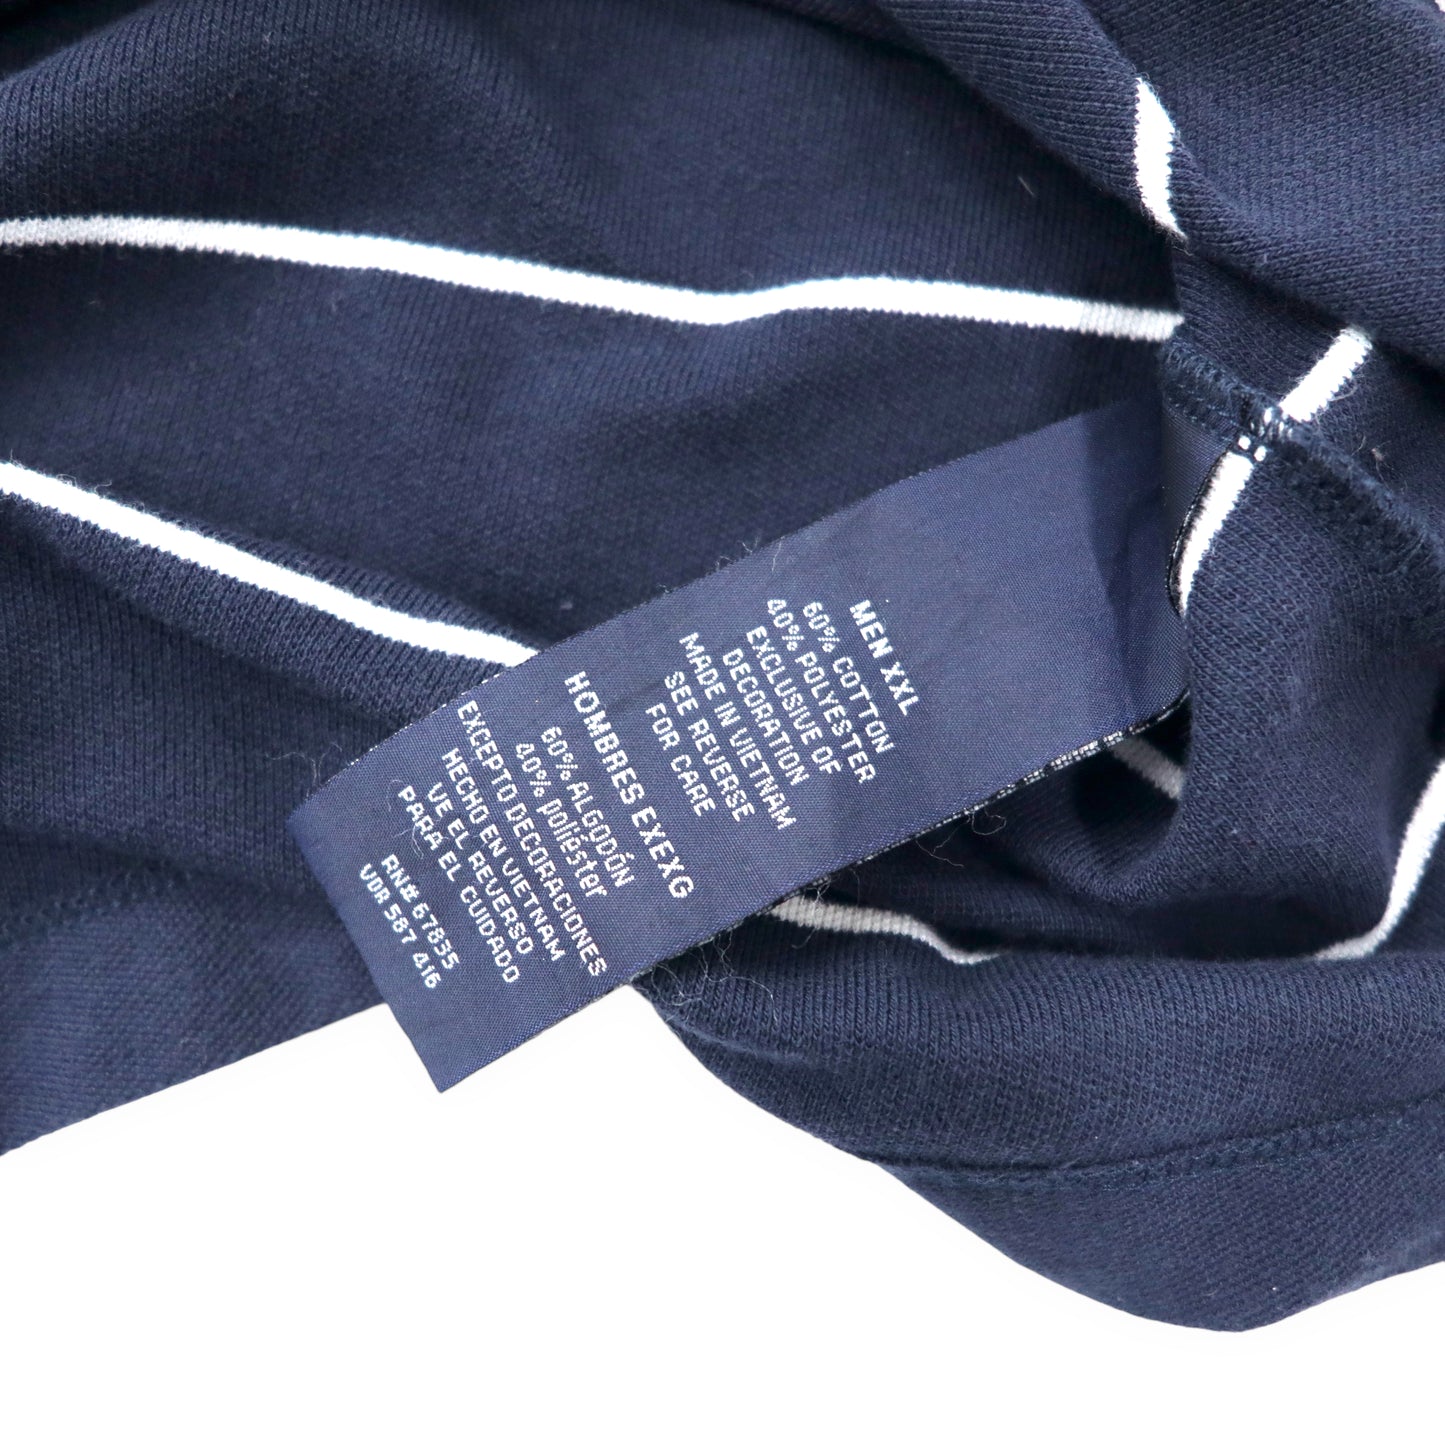 NAUTICA ボーダー ポロシャツ XXL ネイビー コットン ワンポイントロゴ刺繍 PERFORMANCE DECK SHIRT ビッグサイズ